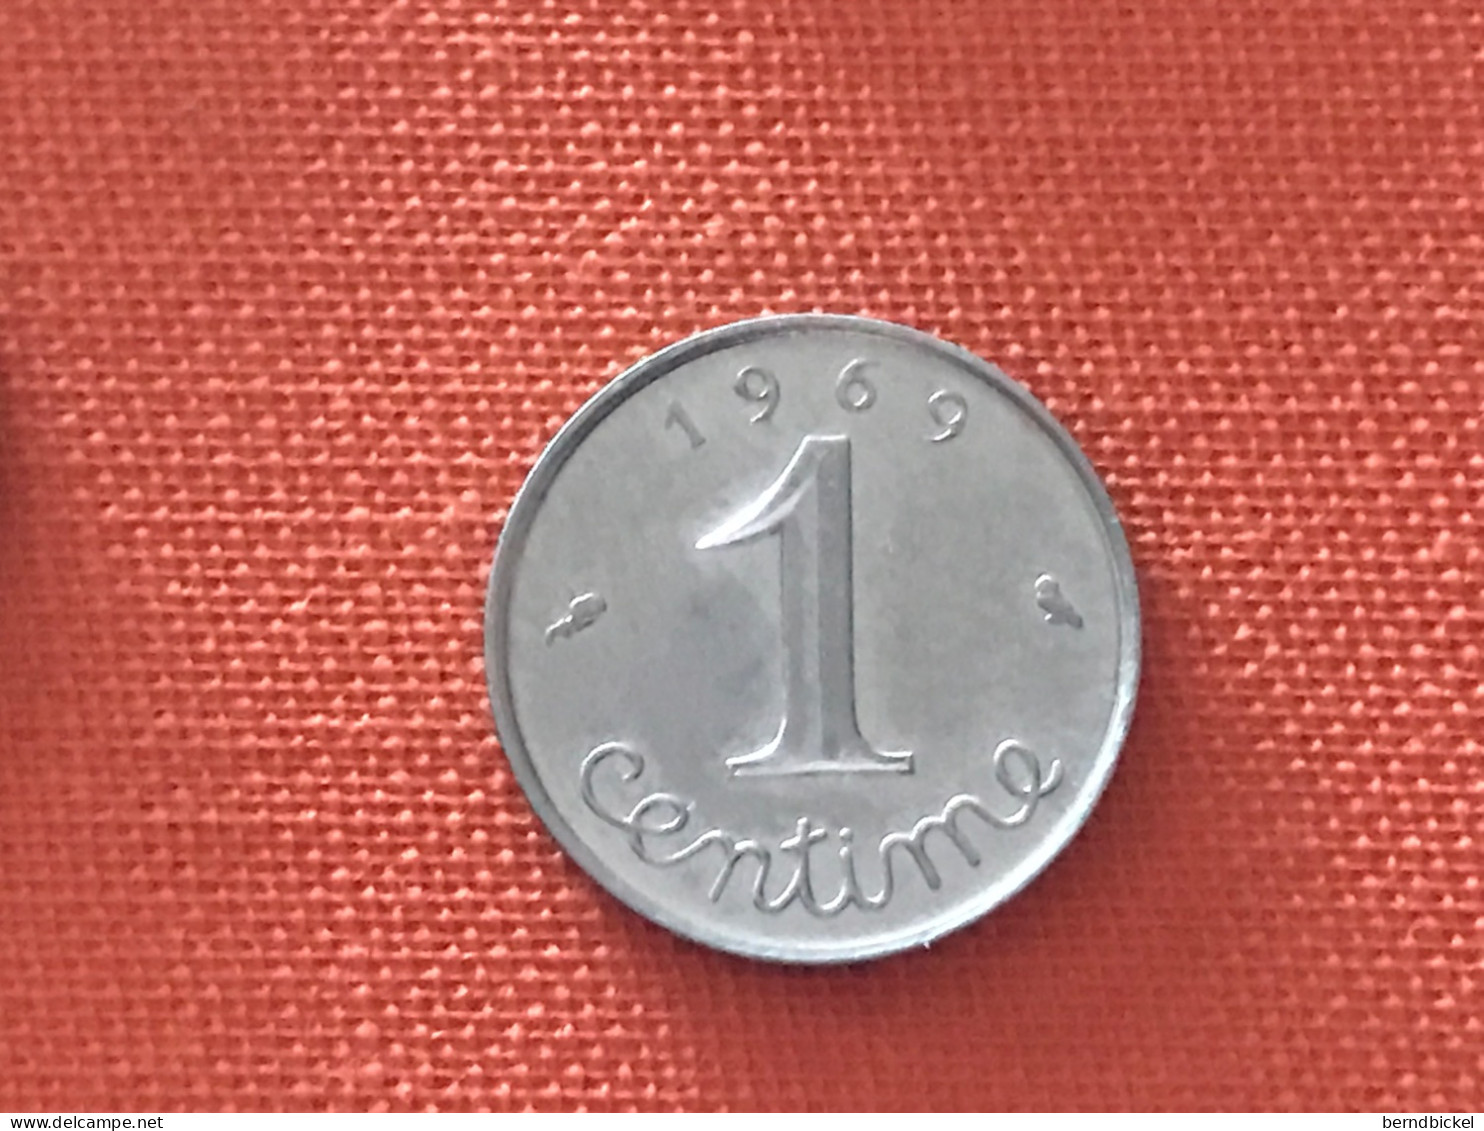 Münze Münzen Umlaufmünze Frankreich 1 Centime 1969 - 1 Centime